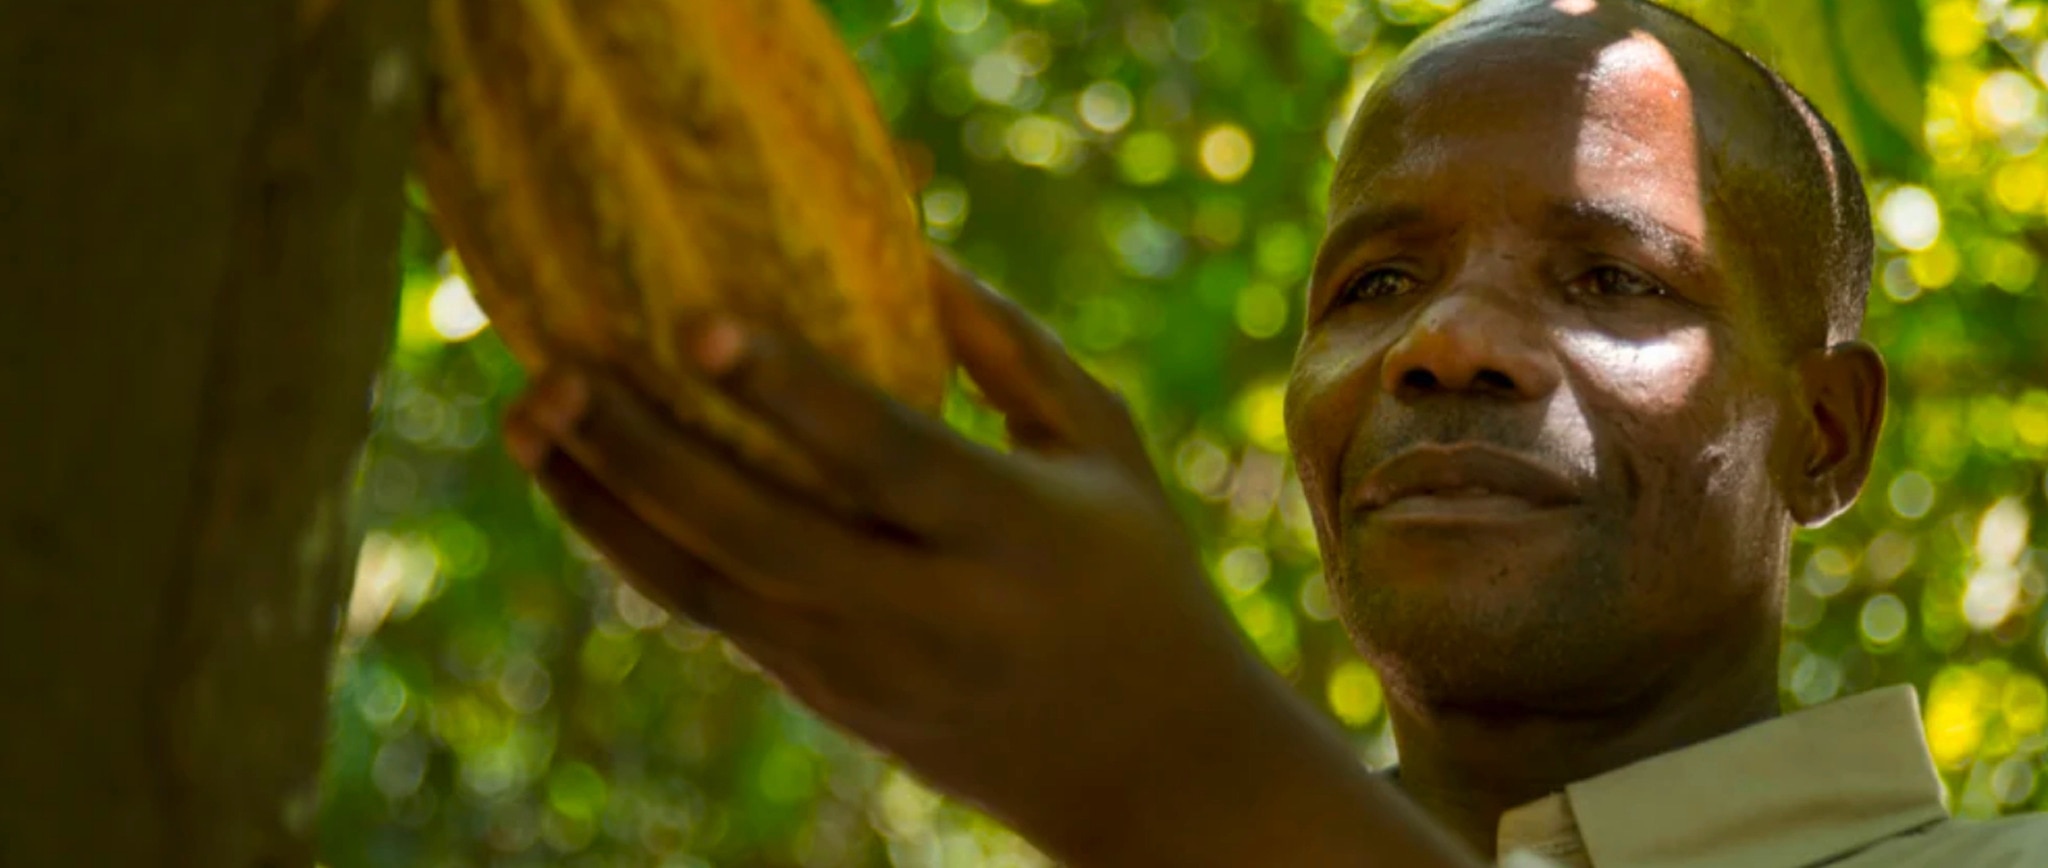 Male cocoa farmer inspecting cocoa pod on a branch.